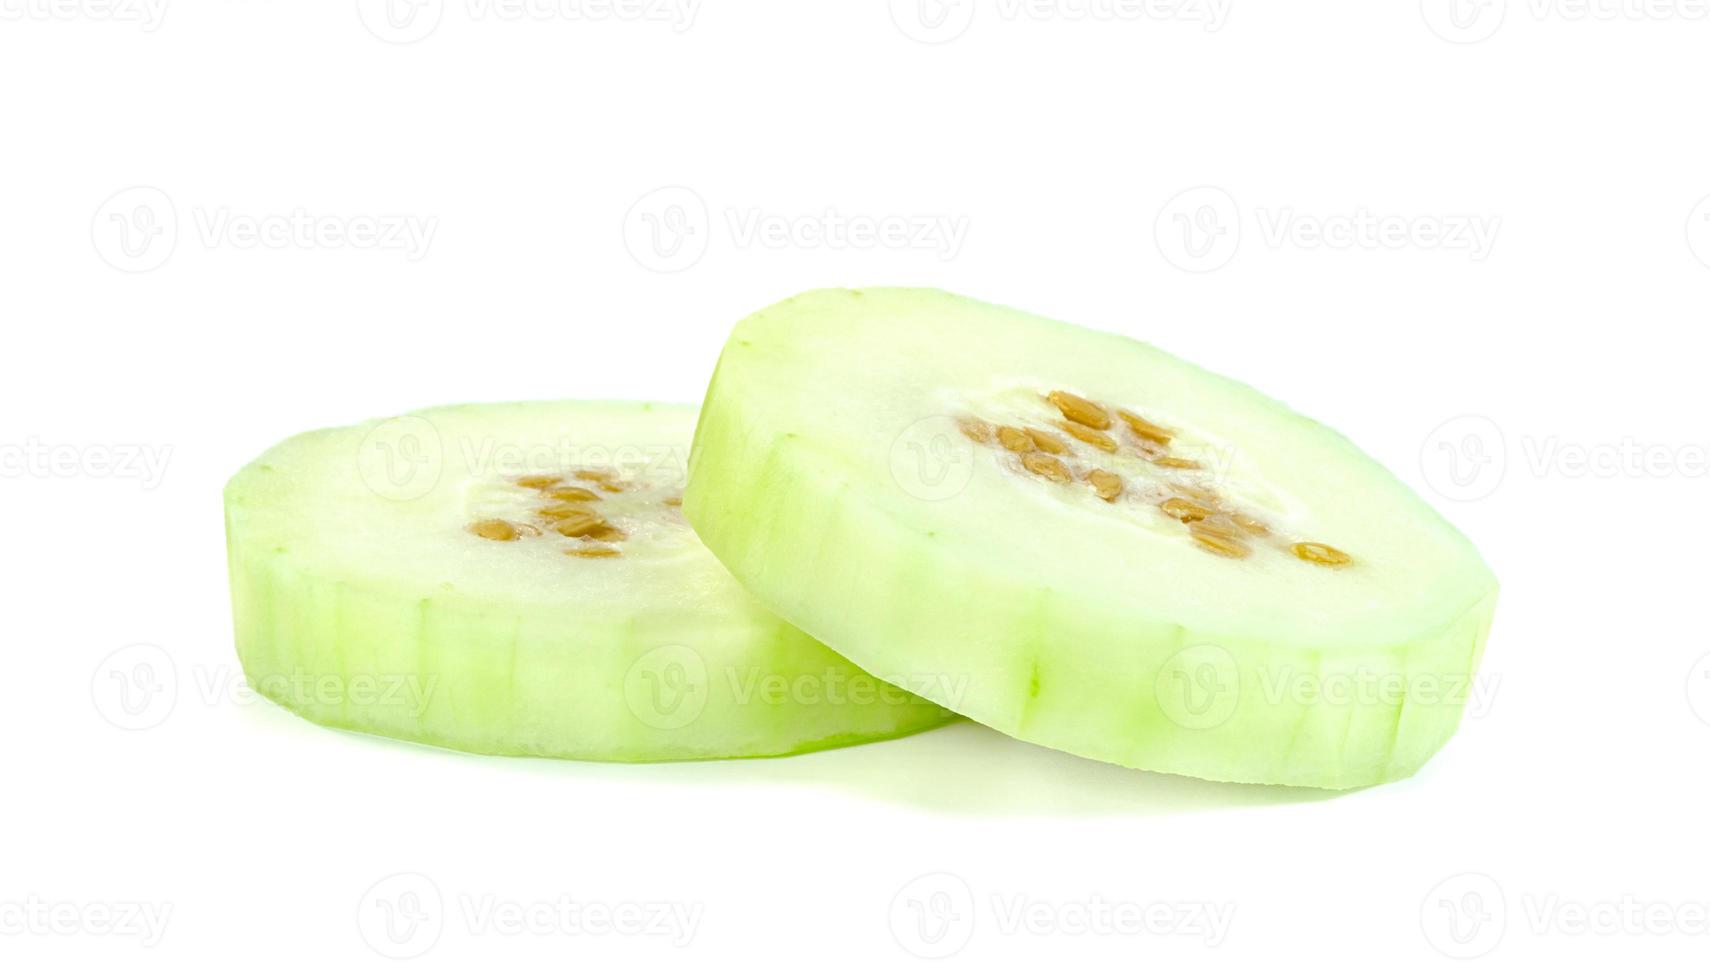 skalad vinter- melon isolerat på vit bakgrund foto